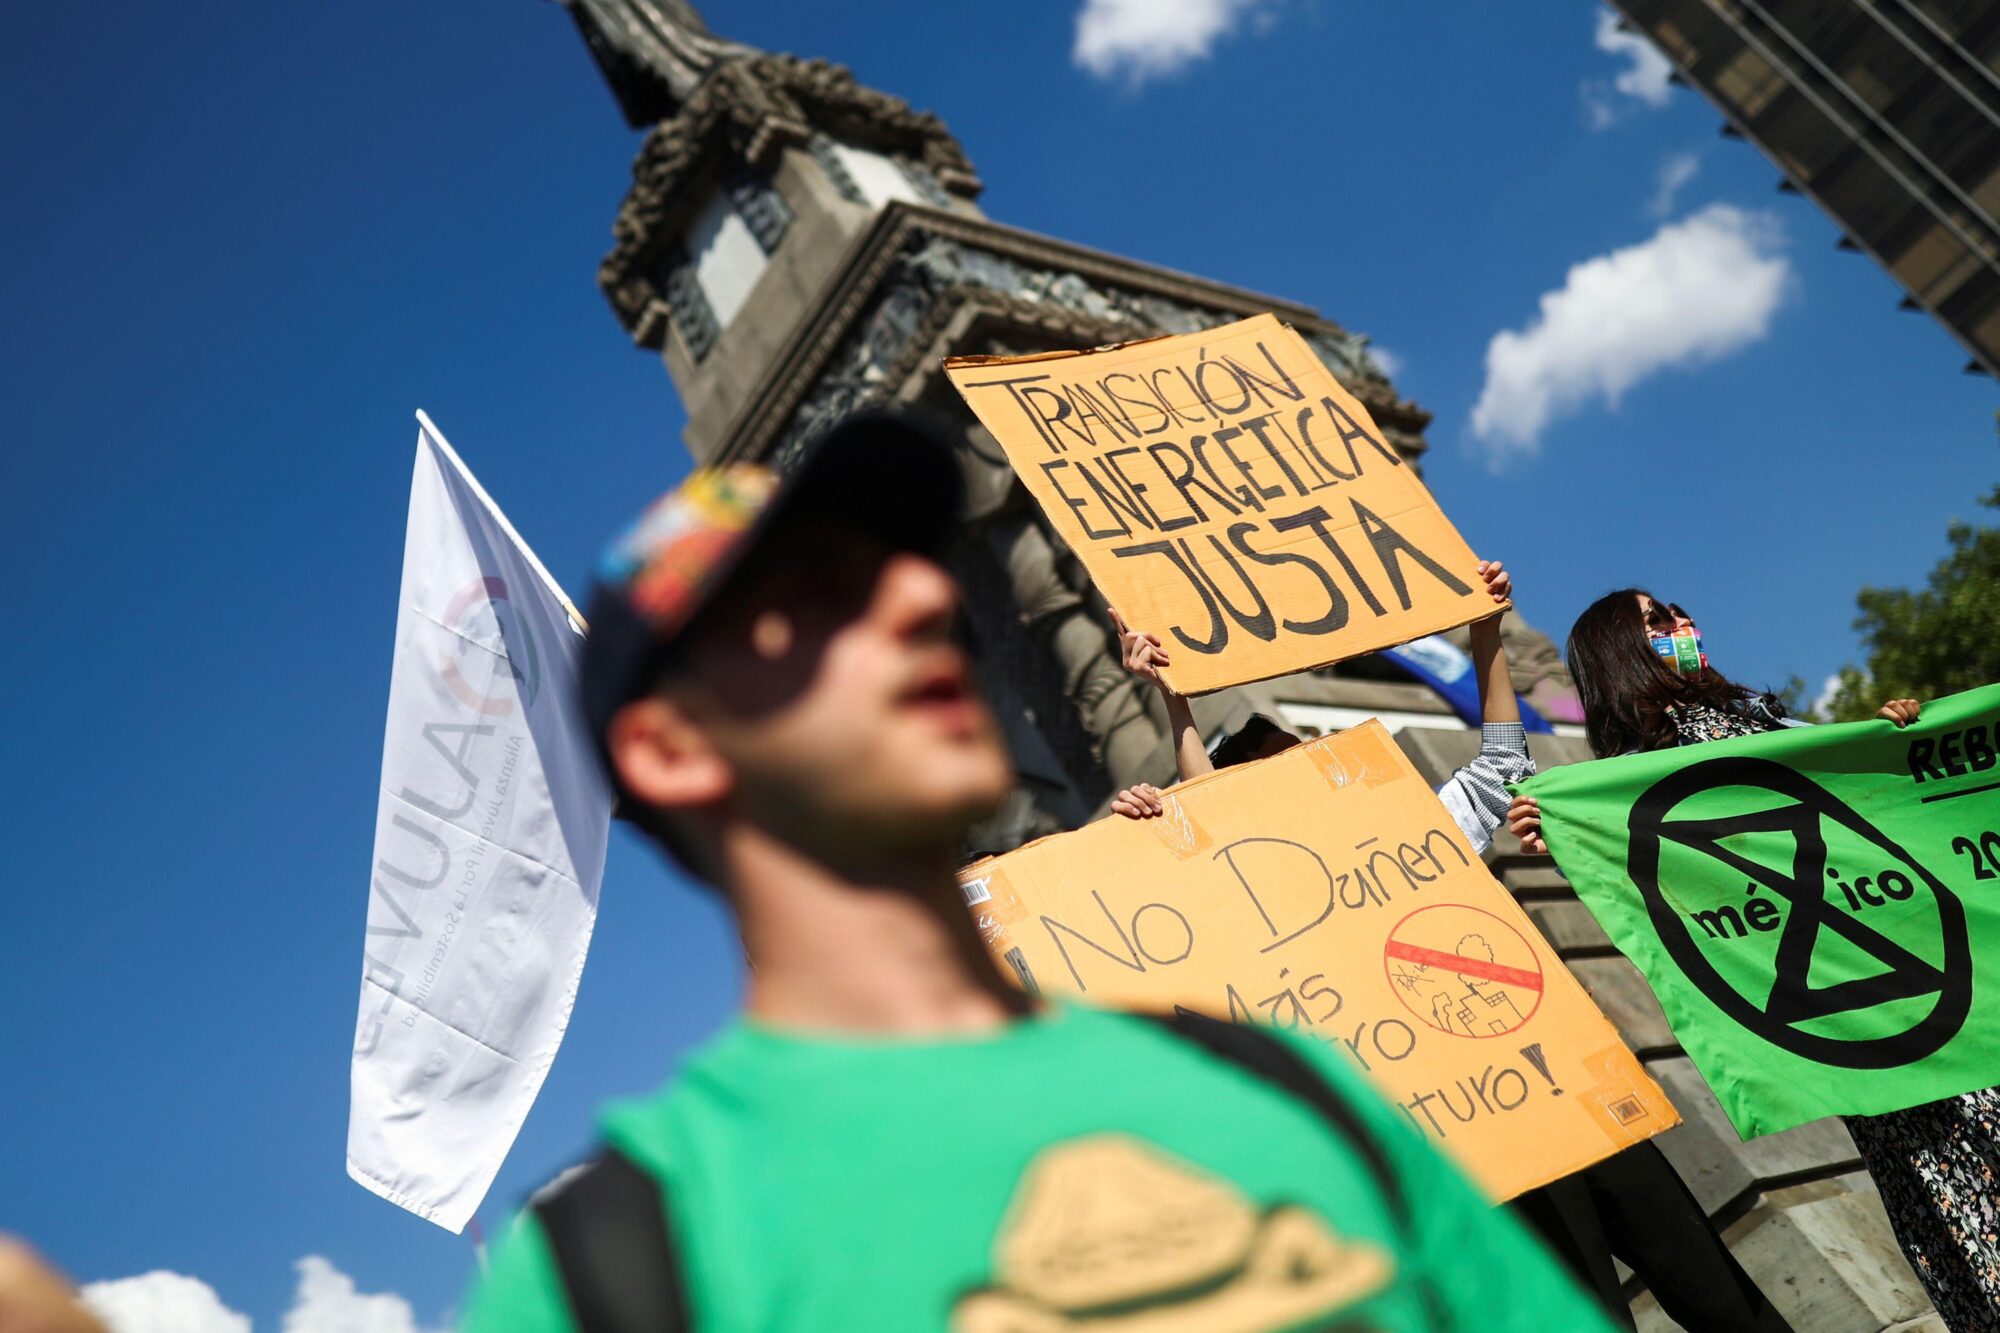 Jovens em um protesto contra o clima, com um cartaz dizendo "Transição de energia justa".